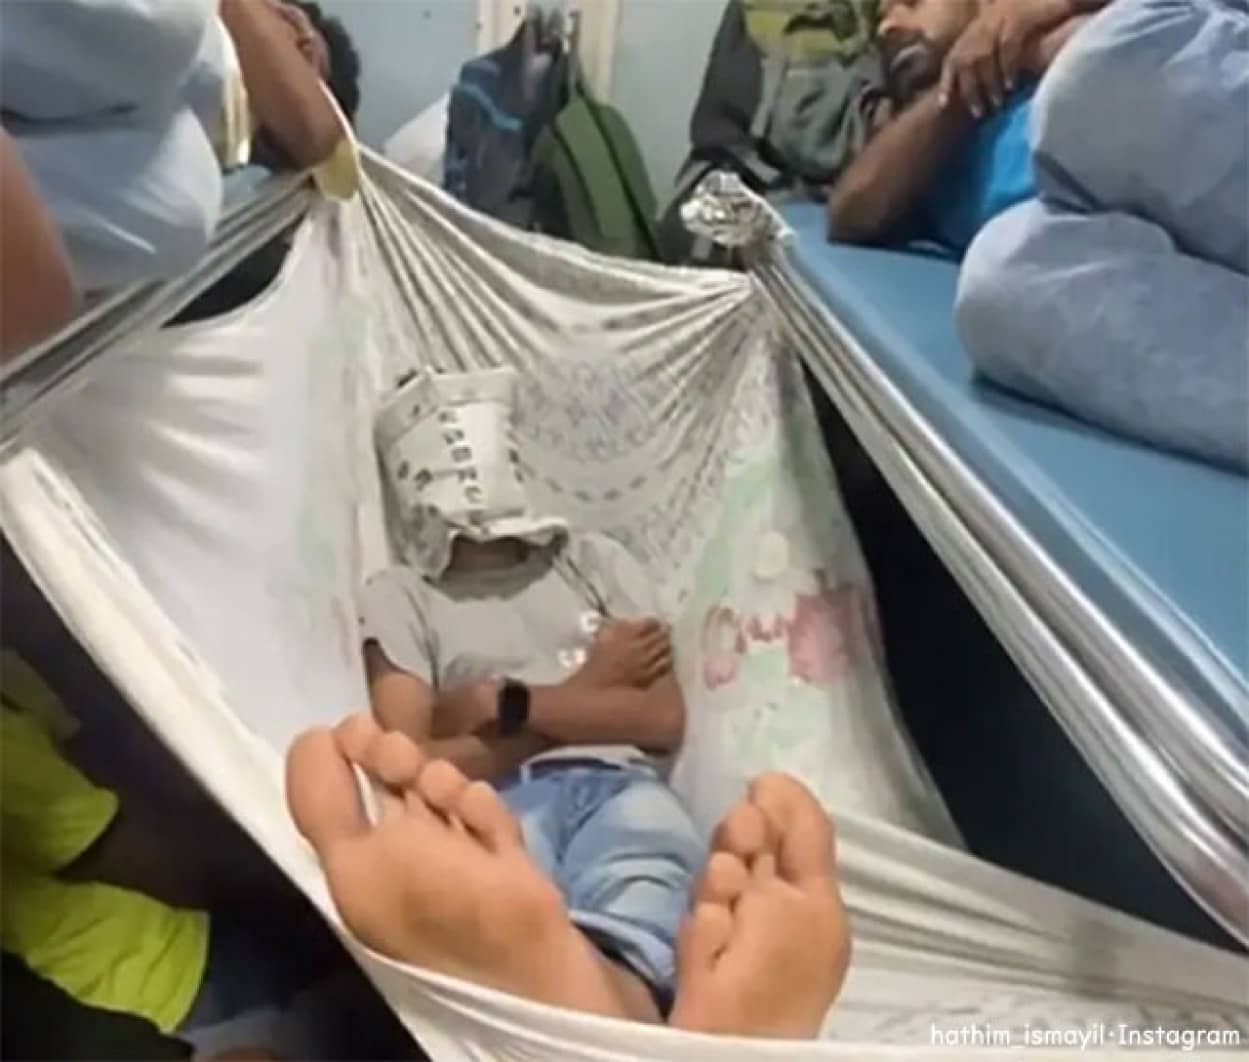 インドの満員列車でシーツでハンモックを作り寝場所を確保した男性